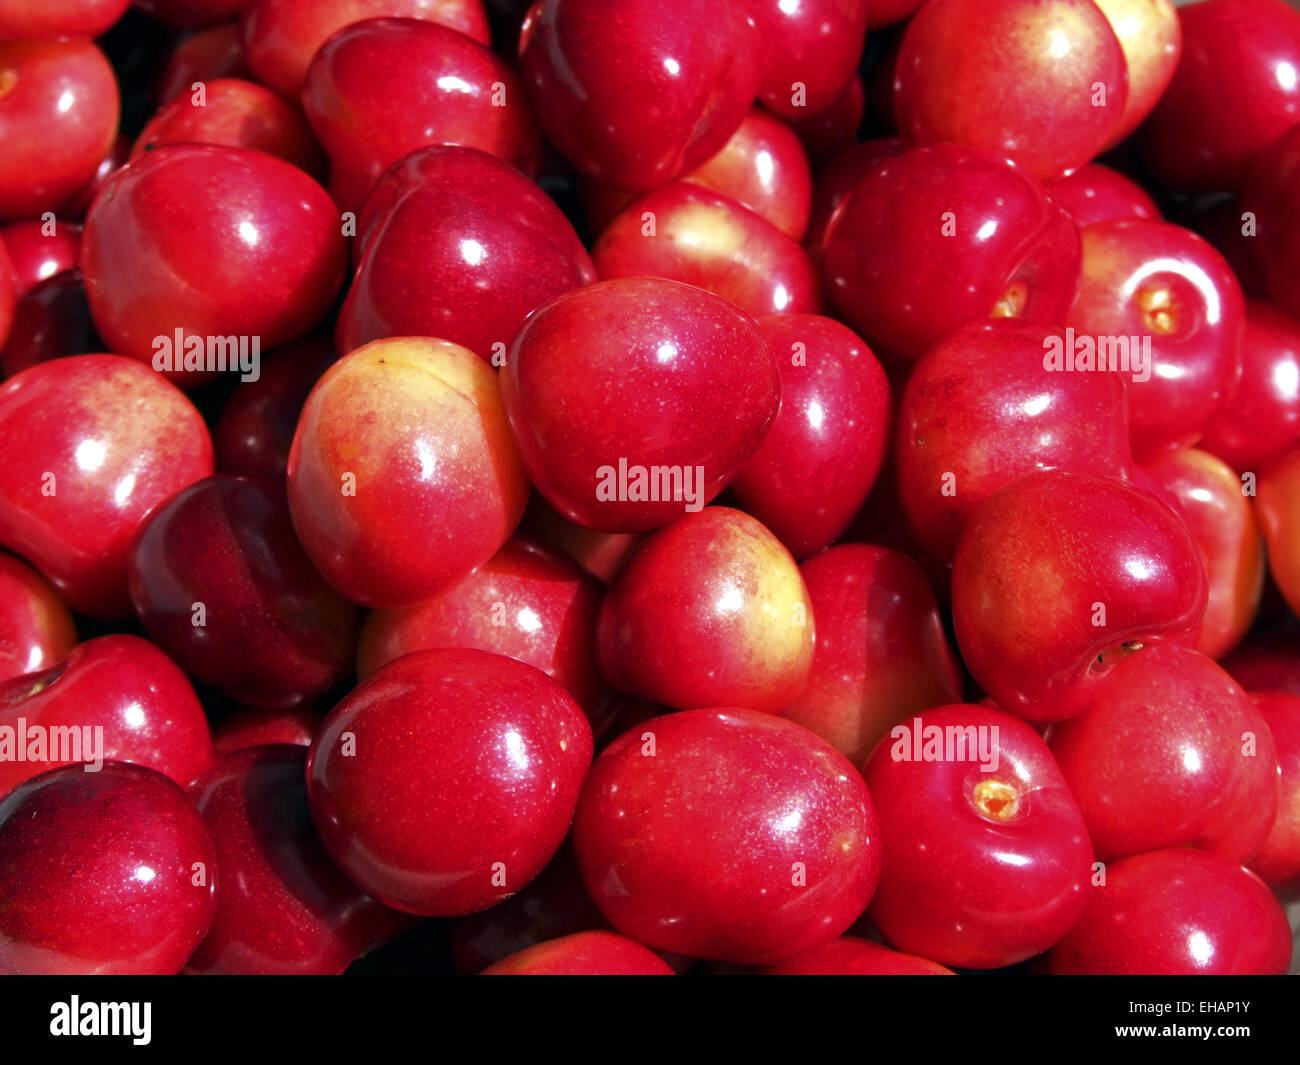 ein Haufen Kirschen / cherries Stock Photo